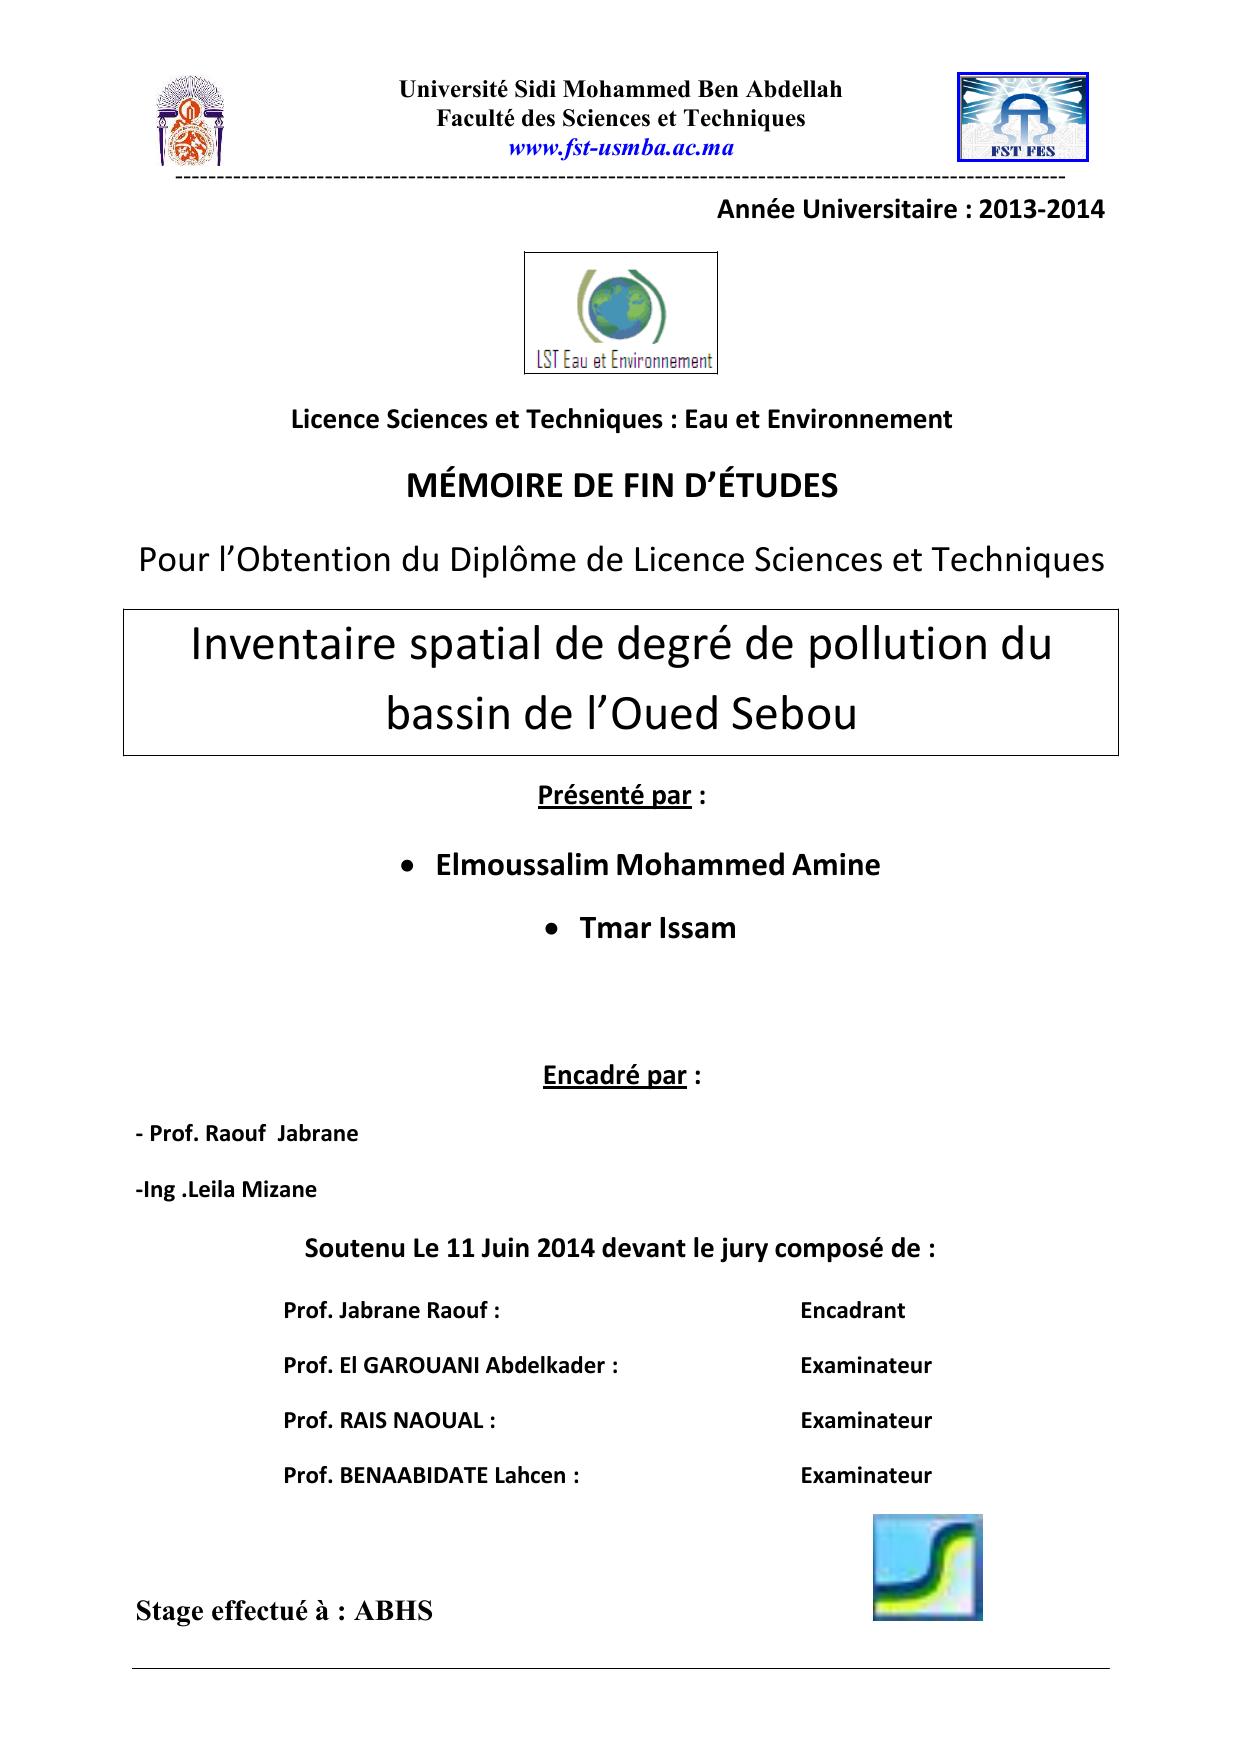 Inventaire spatial de degré de pollution du bassin de l’Oued Sebou